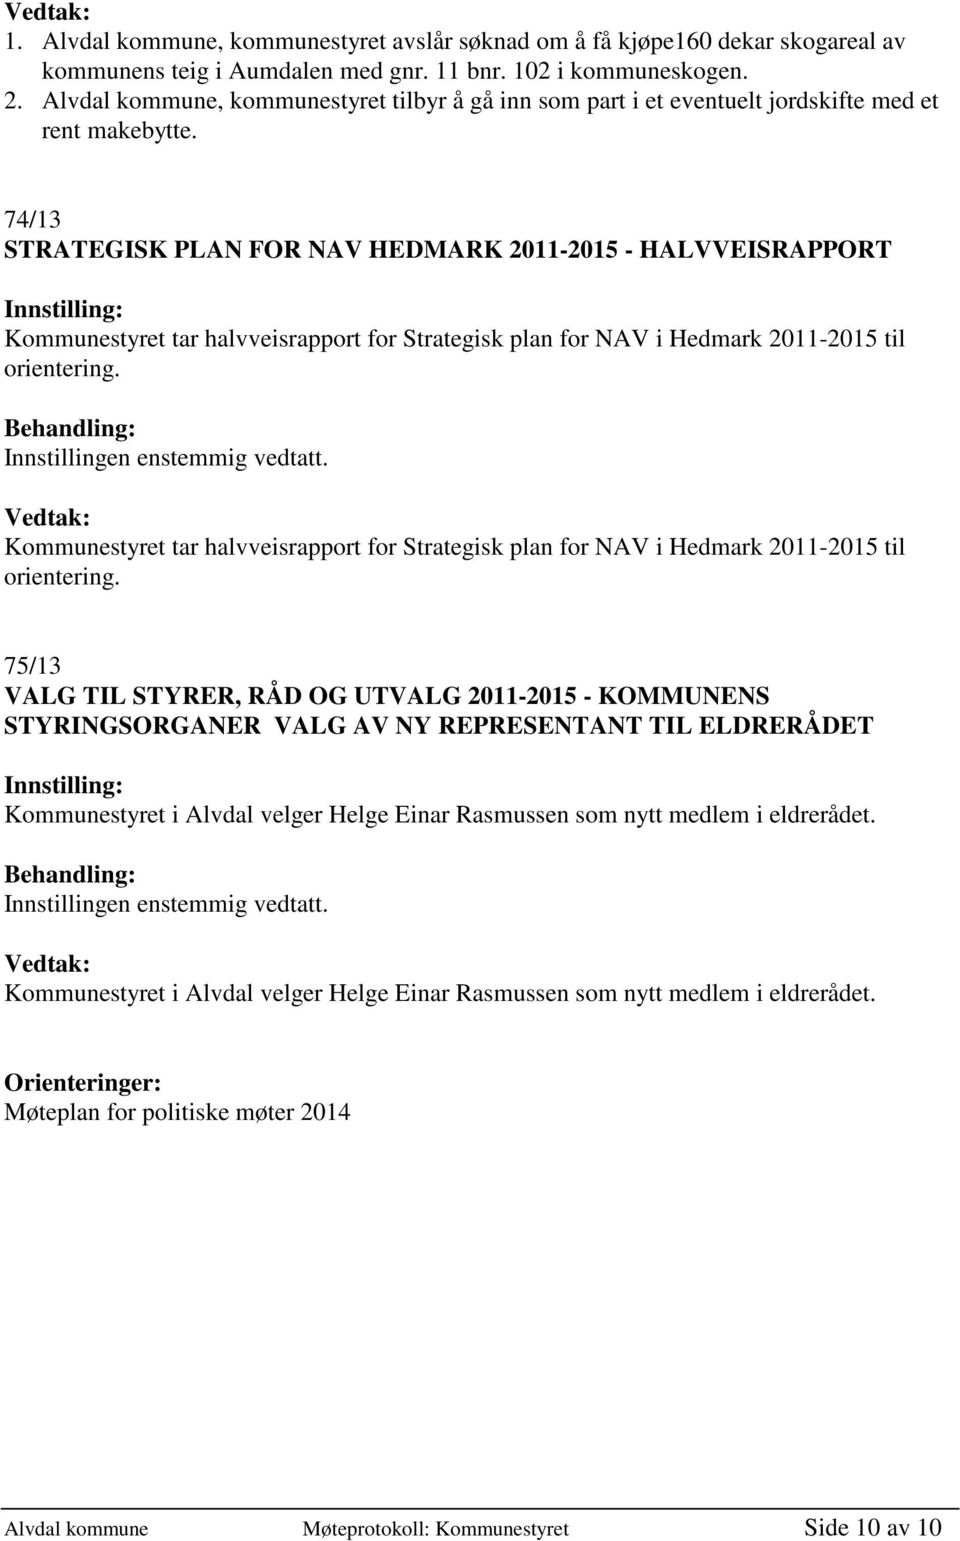 74/13 STRATEGISK PLAN FOR NAV HEDMARK 2011-2015 - HALVVEISRAPPORT Kommunestyret tar halvveisrapport for Strategisk plan for NAV i Hedmark 2011-2015 til orientering.